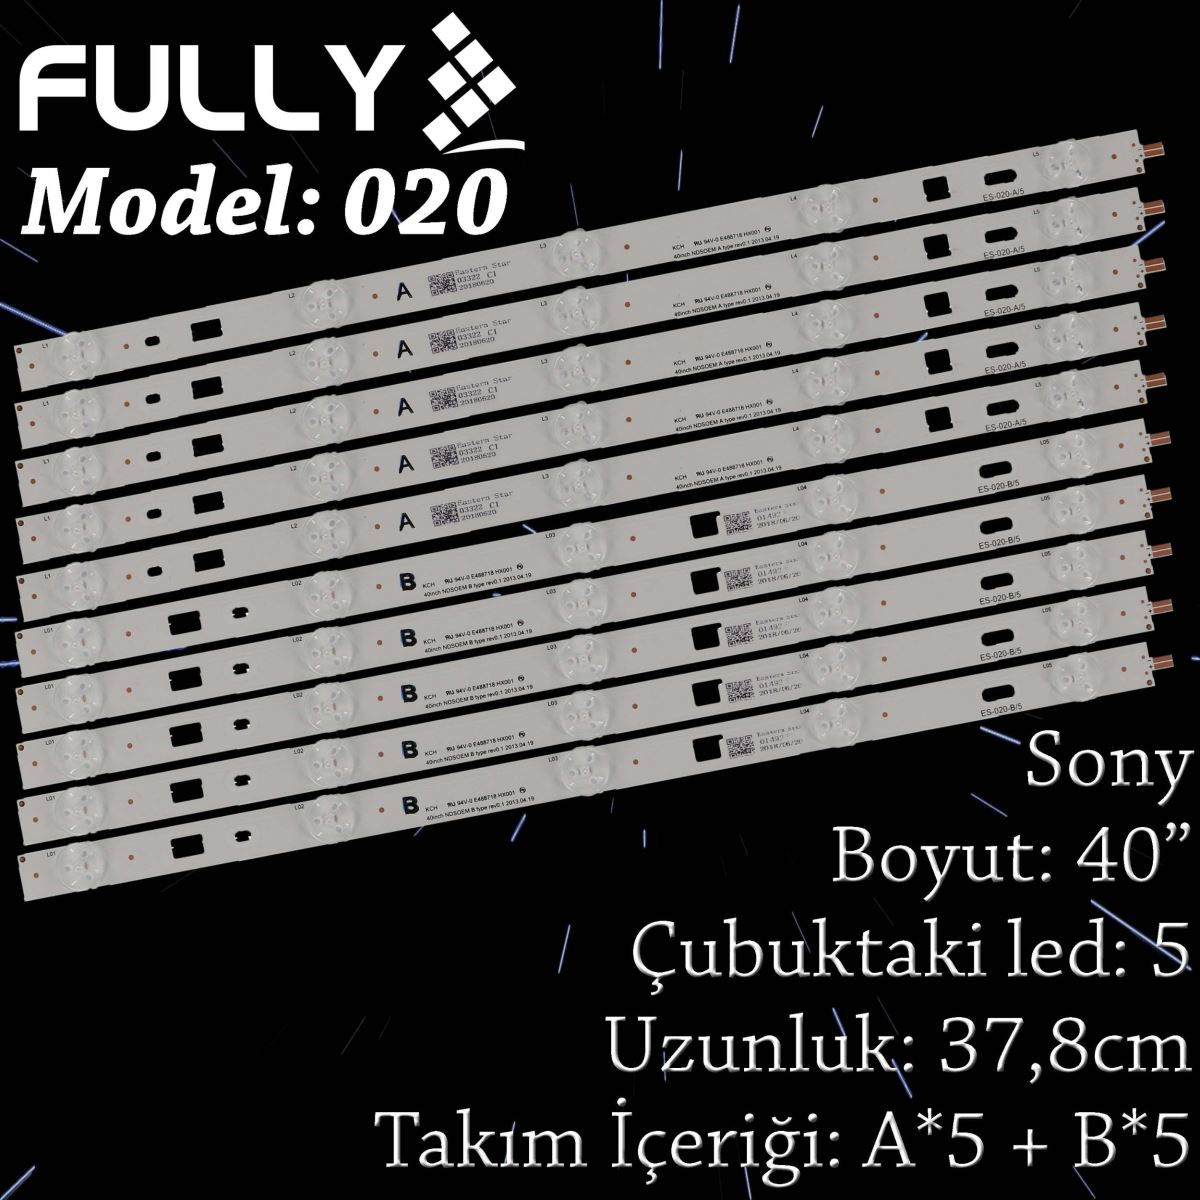 FULLY SET-020 SONY 40 INC LG Innotek 40inch NDSOEM A TYPE REV0.1 2013.04.19 KLV-40R452A